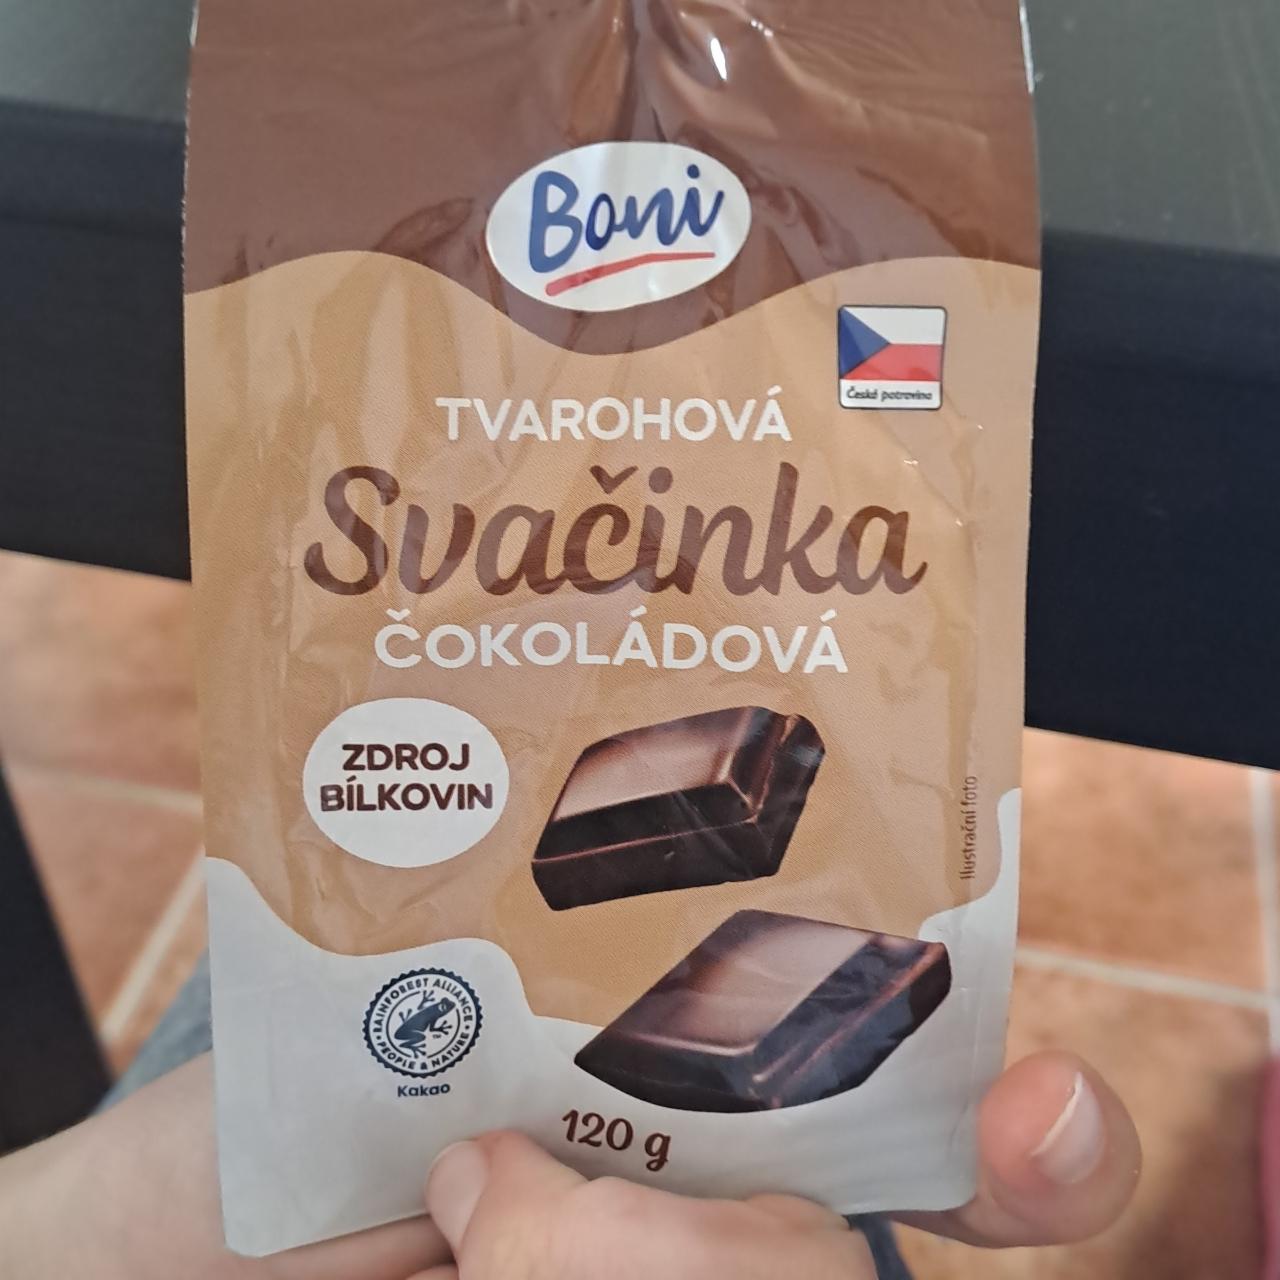 Фото - Svačinka tvarohová cokoladová Boni